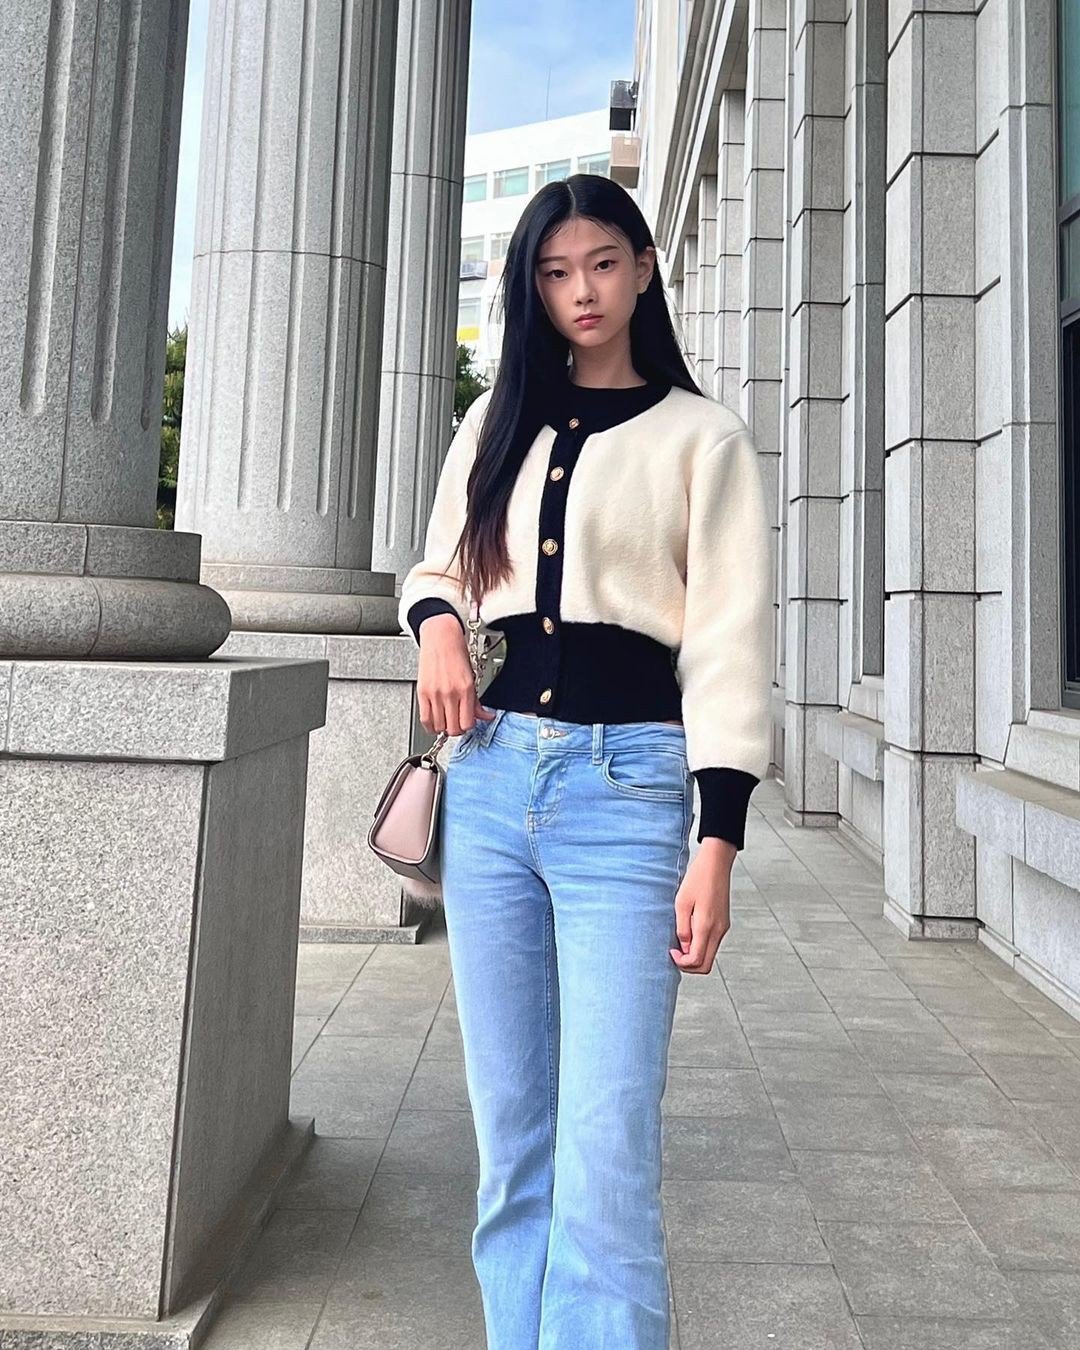 Người mẫu Hàn Quốc hiện có 25.400 người theo dõi trên Instagram. Tuổi đời còn trẻ, Oh Pyeong Hwa được kỳ vọng là gương mặt sáng giá trong ngành người mẫu xứ kim chi và cả quốc tế.